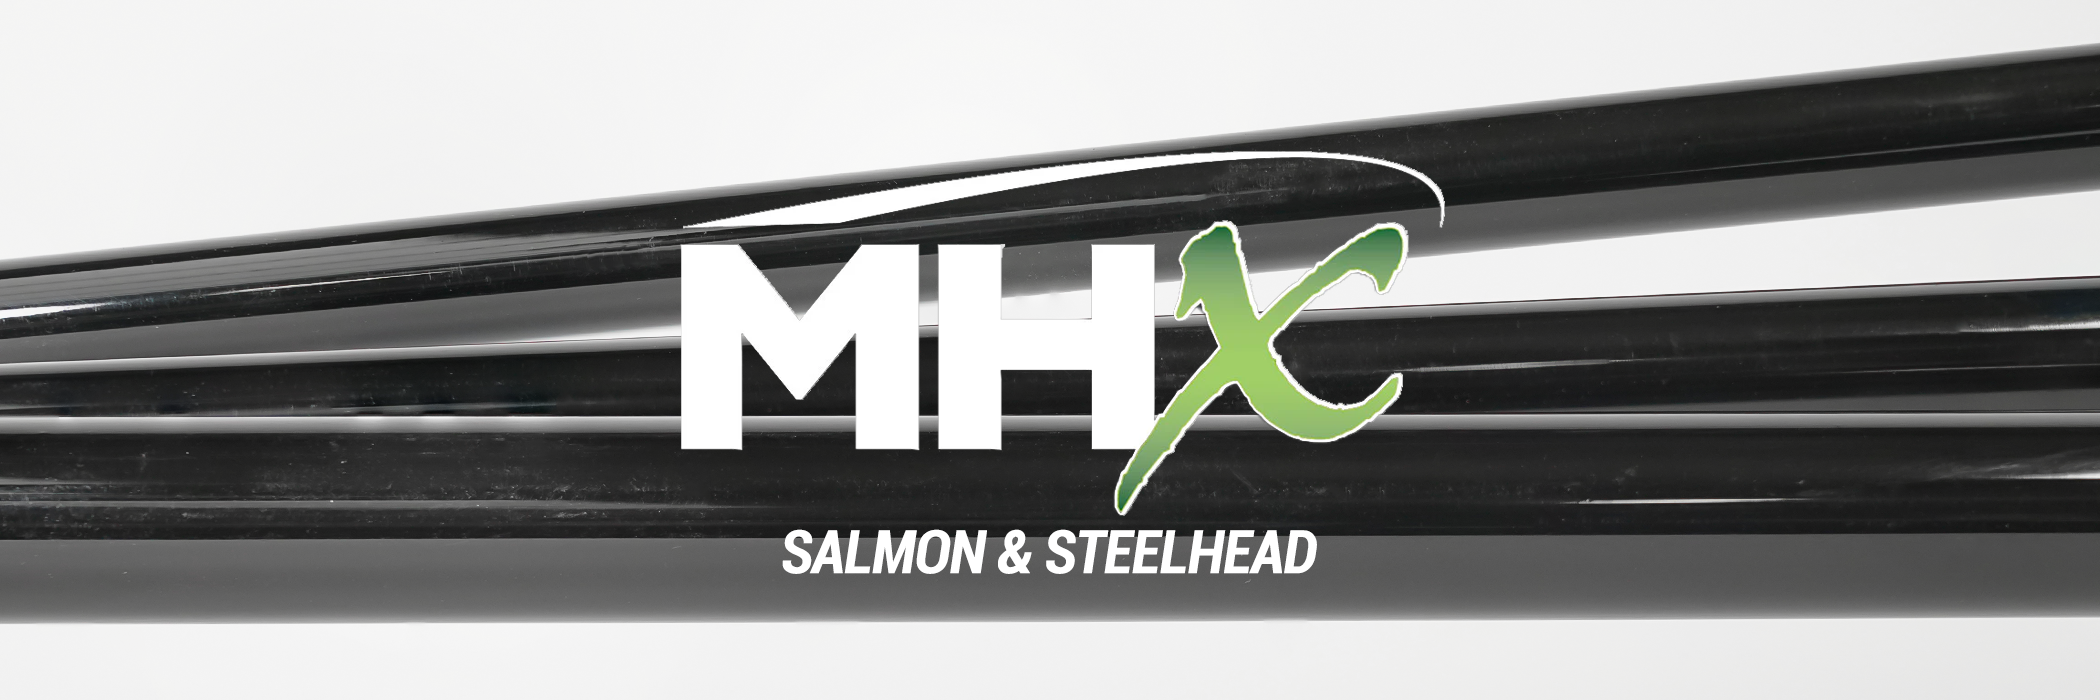 MHX - Salmon & Steelhead